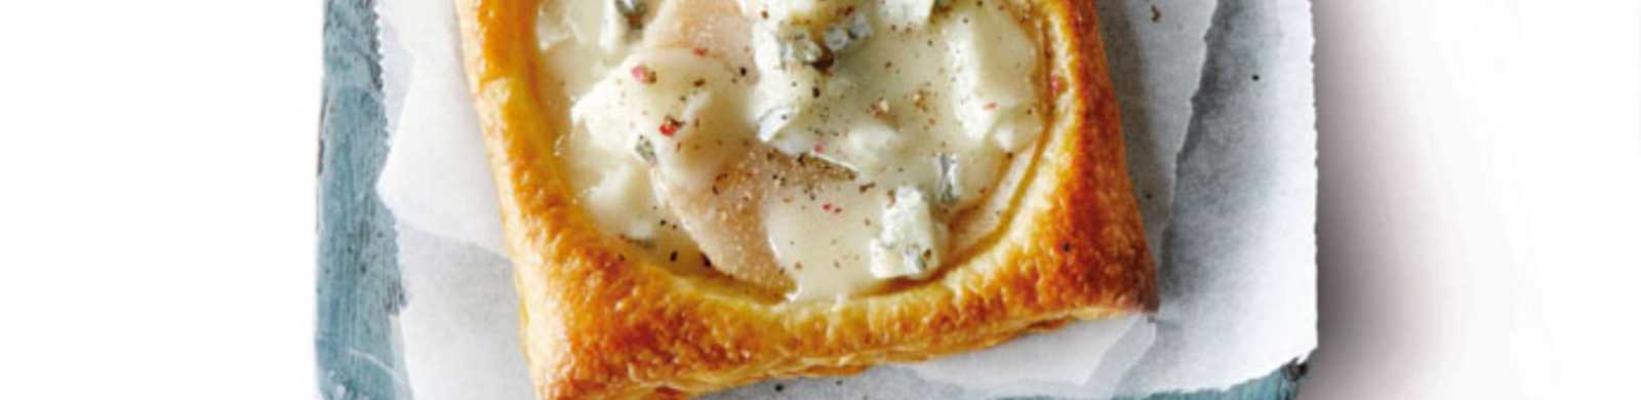 pear pie with gorgonzola